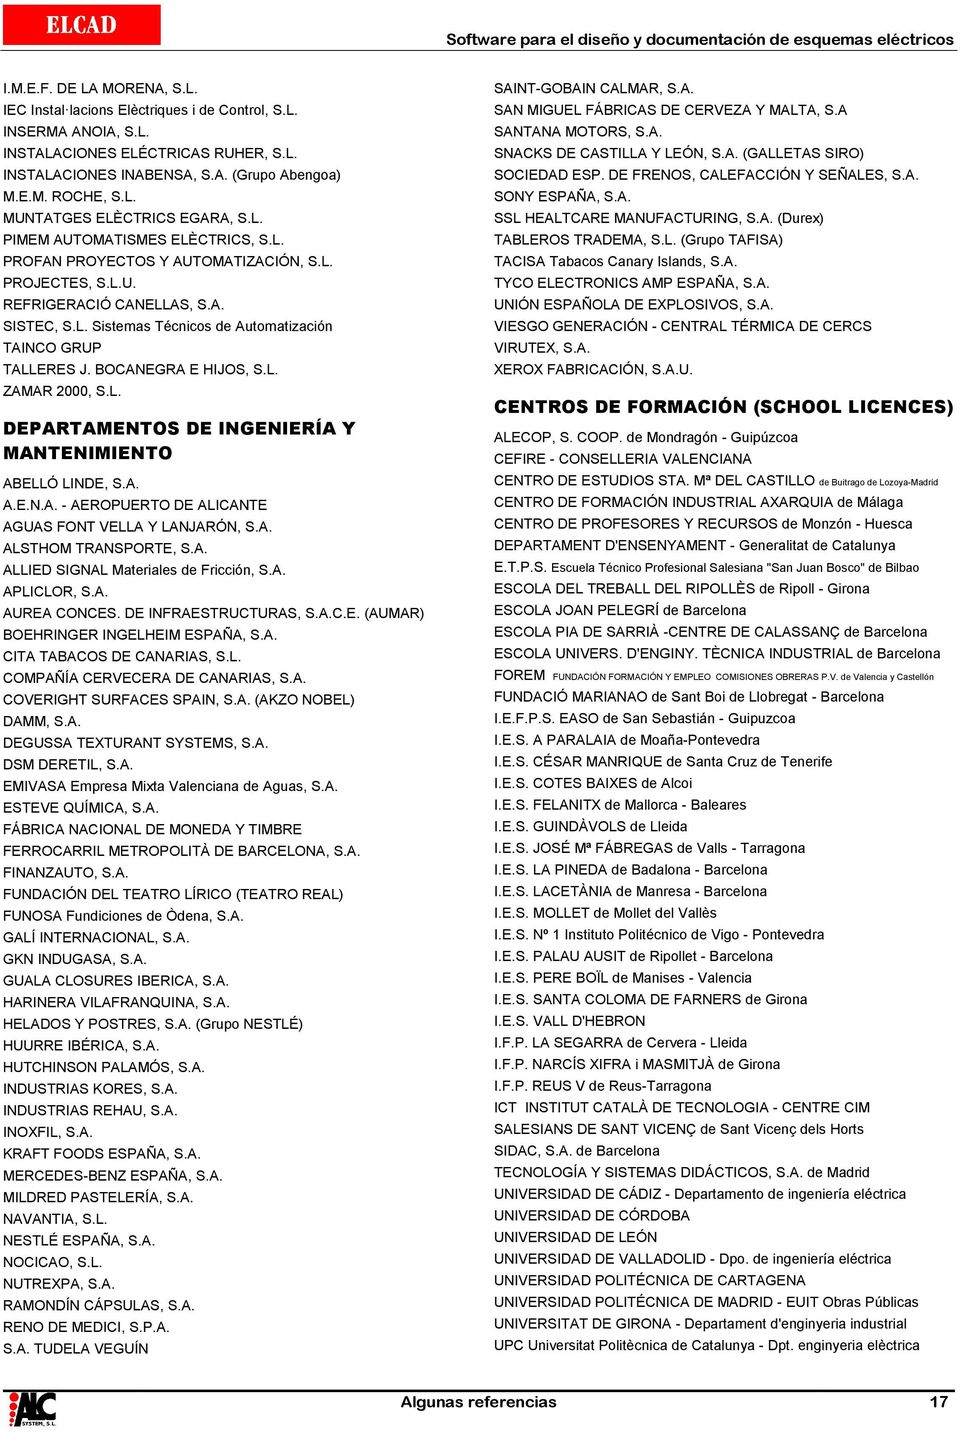 BOCANEGRA E HIJOS, S.L. ZAMAR 2000, S.L. DEPARTAMENTOS DE INGENIERÍA Y MANTENIMIENTO ABELLÓ LINDE, S.A. A.E.N.A. - AEROPUERTO DE ALICANTE AGUAS FONT VELLA Y LANJARÓN, S.A. ALSTHOM TRANSPORTE, S.A. ALLIED SIGNAL Materiales de Fricción, S.